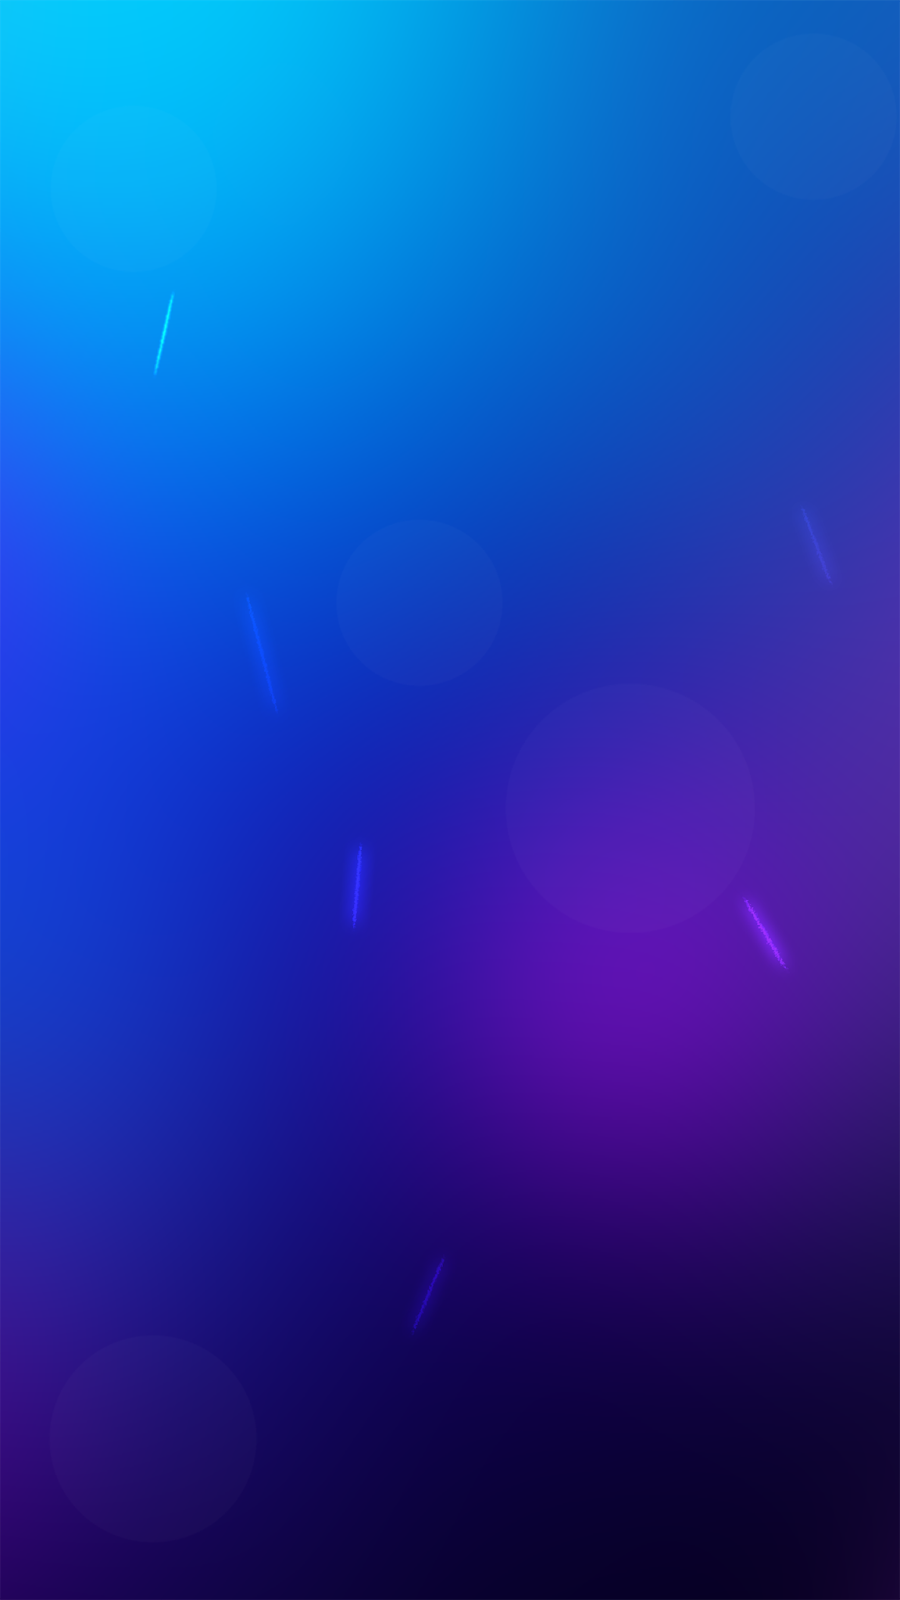 carta da parati galaxy s7,blu,viola,viola,blu cobalto,blu elettrico